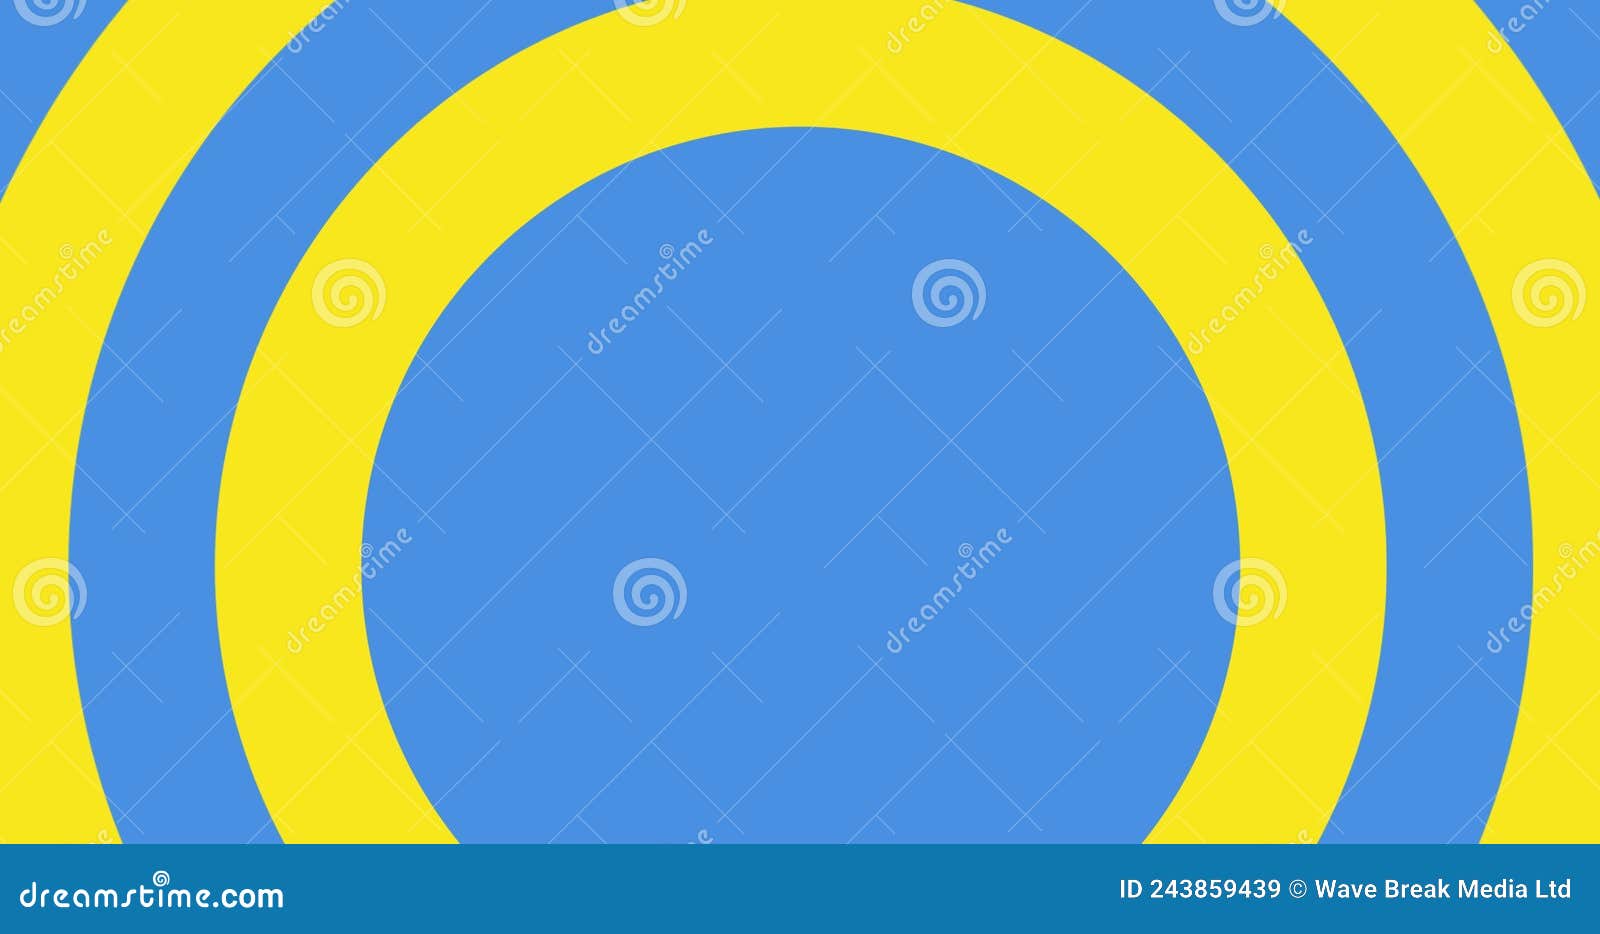 Circles: Hình ảnh về những vòng tròn khác nhau với sự độc đáo và phong phú sẽ khiến bạn tò mò và muốn khám phá thêm.